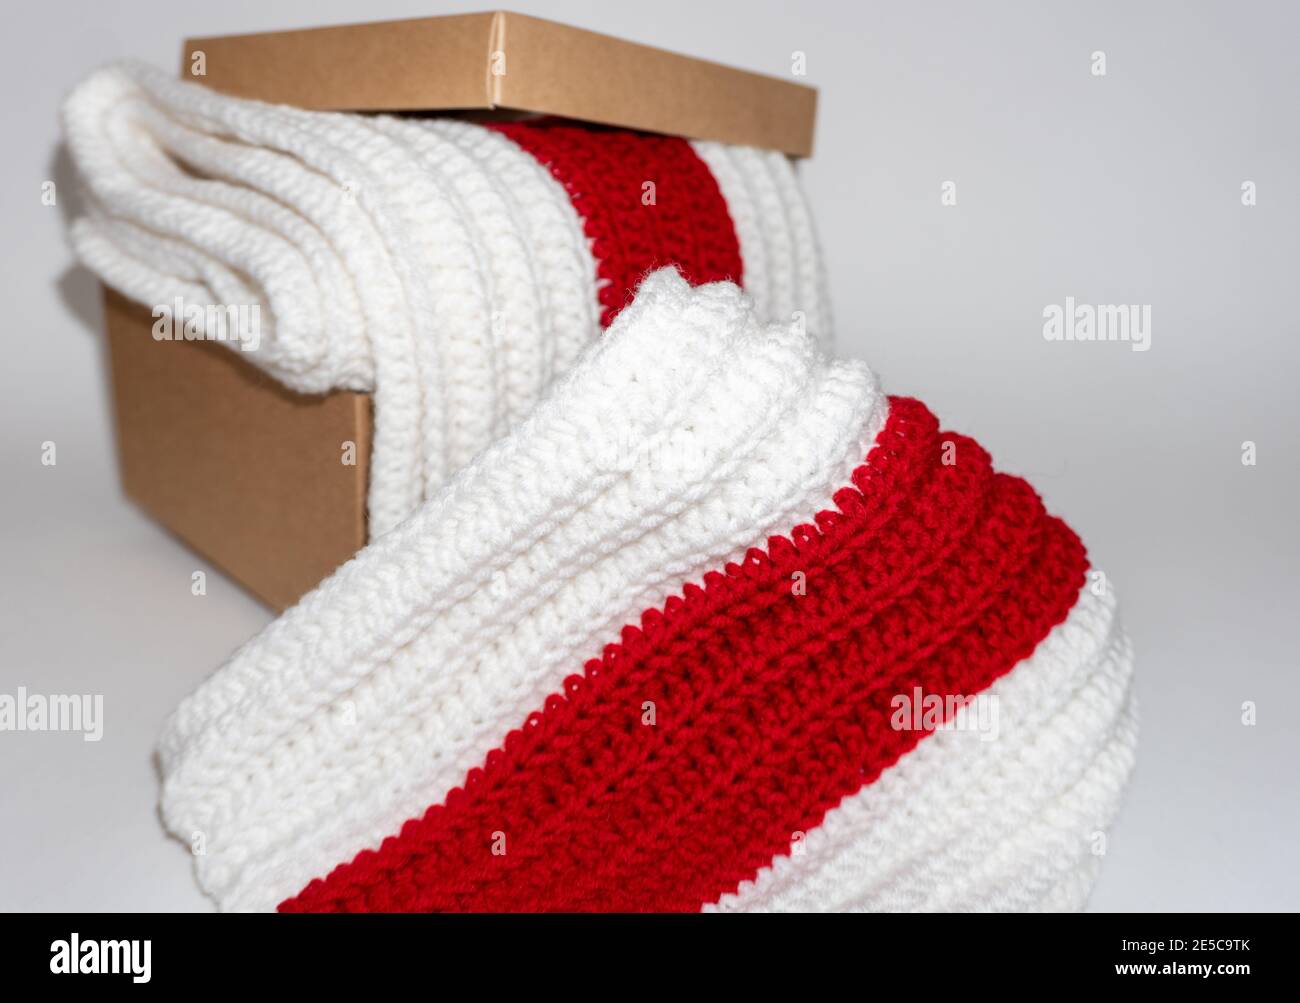 Weiß-rot-weiß gestrickter Schal in Pappkarton auf weißem Hintergrund Stockfoto